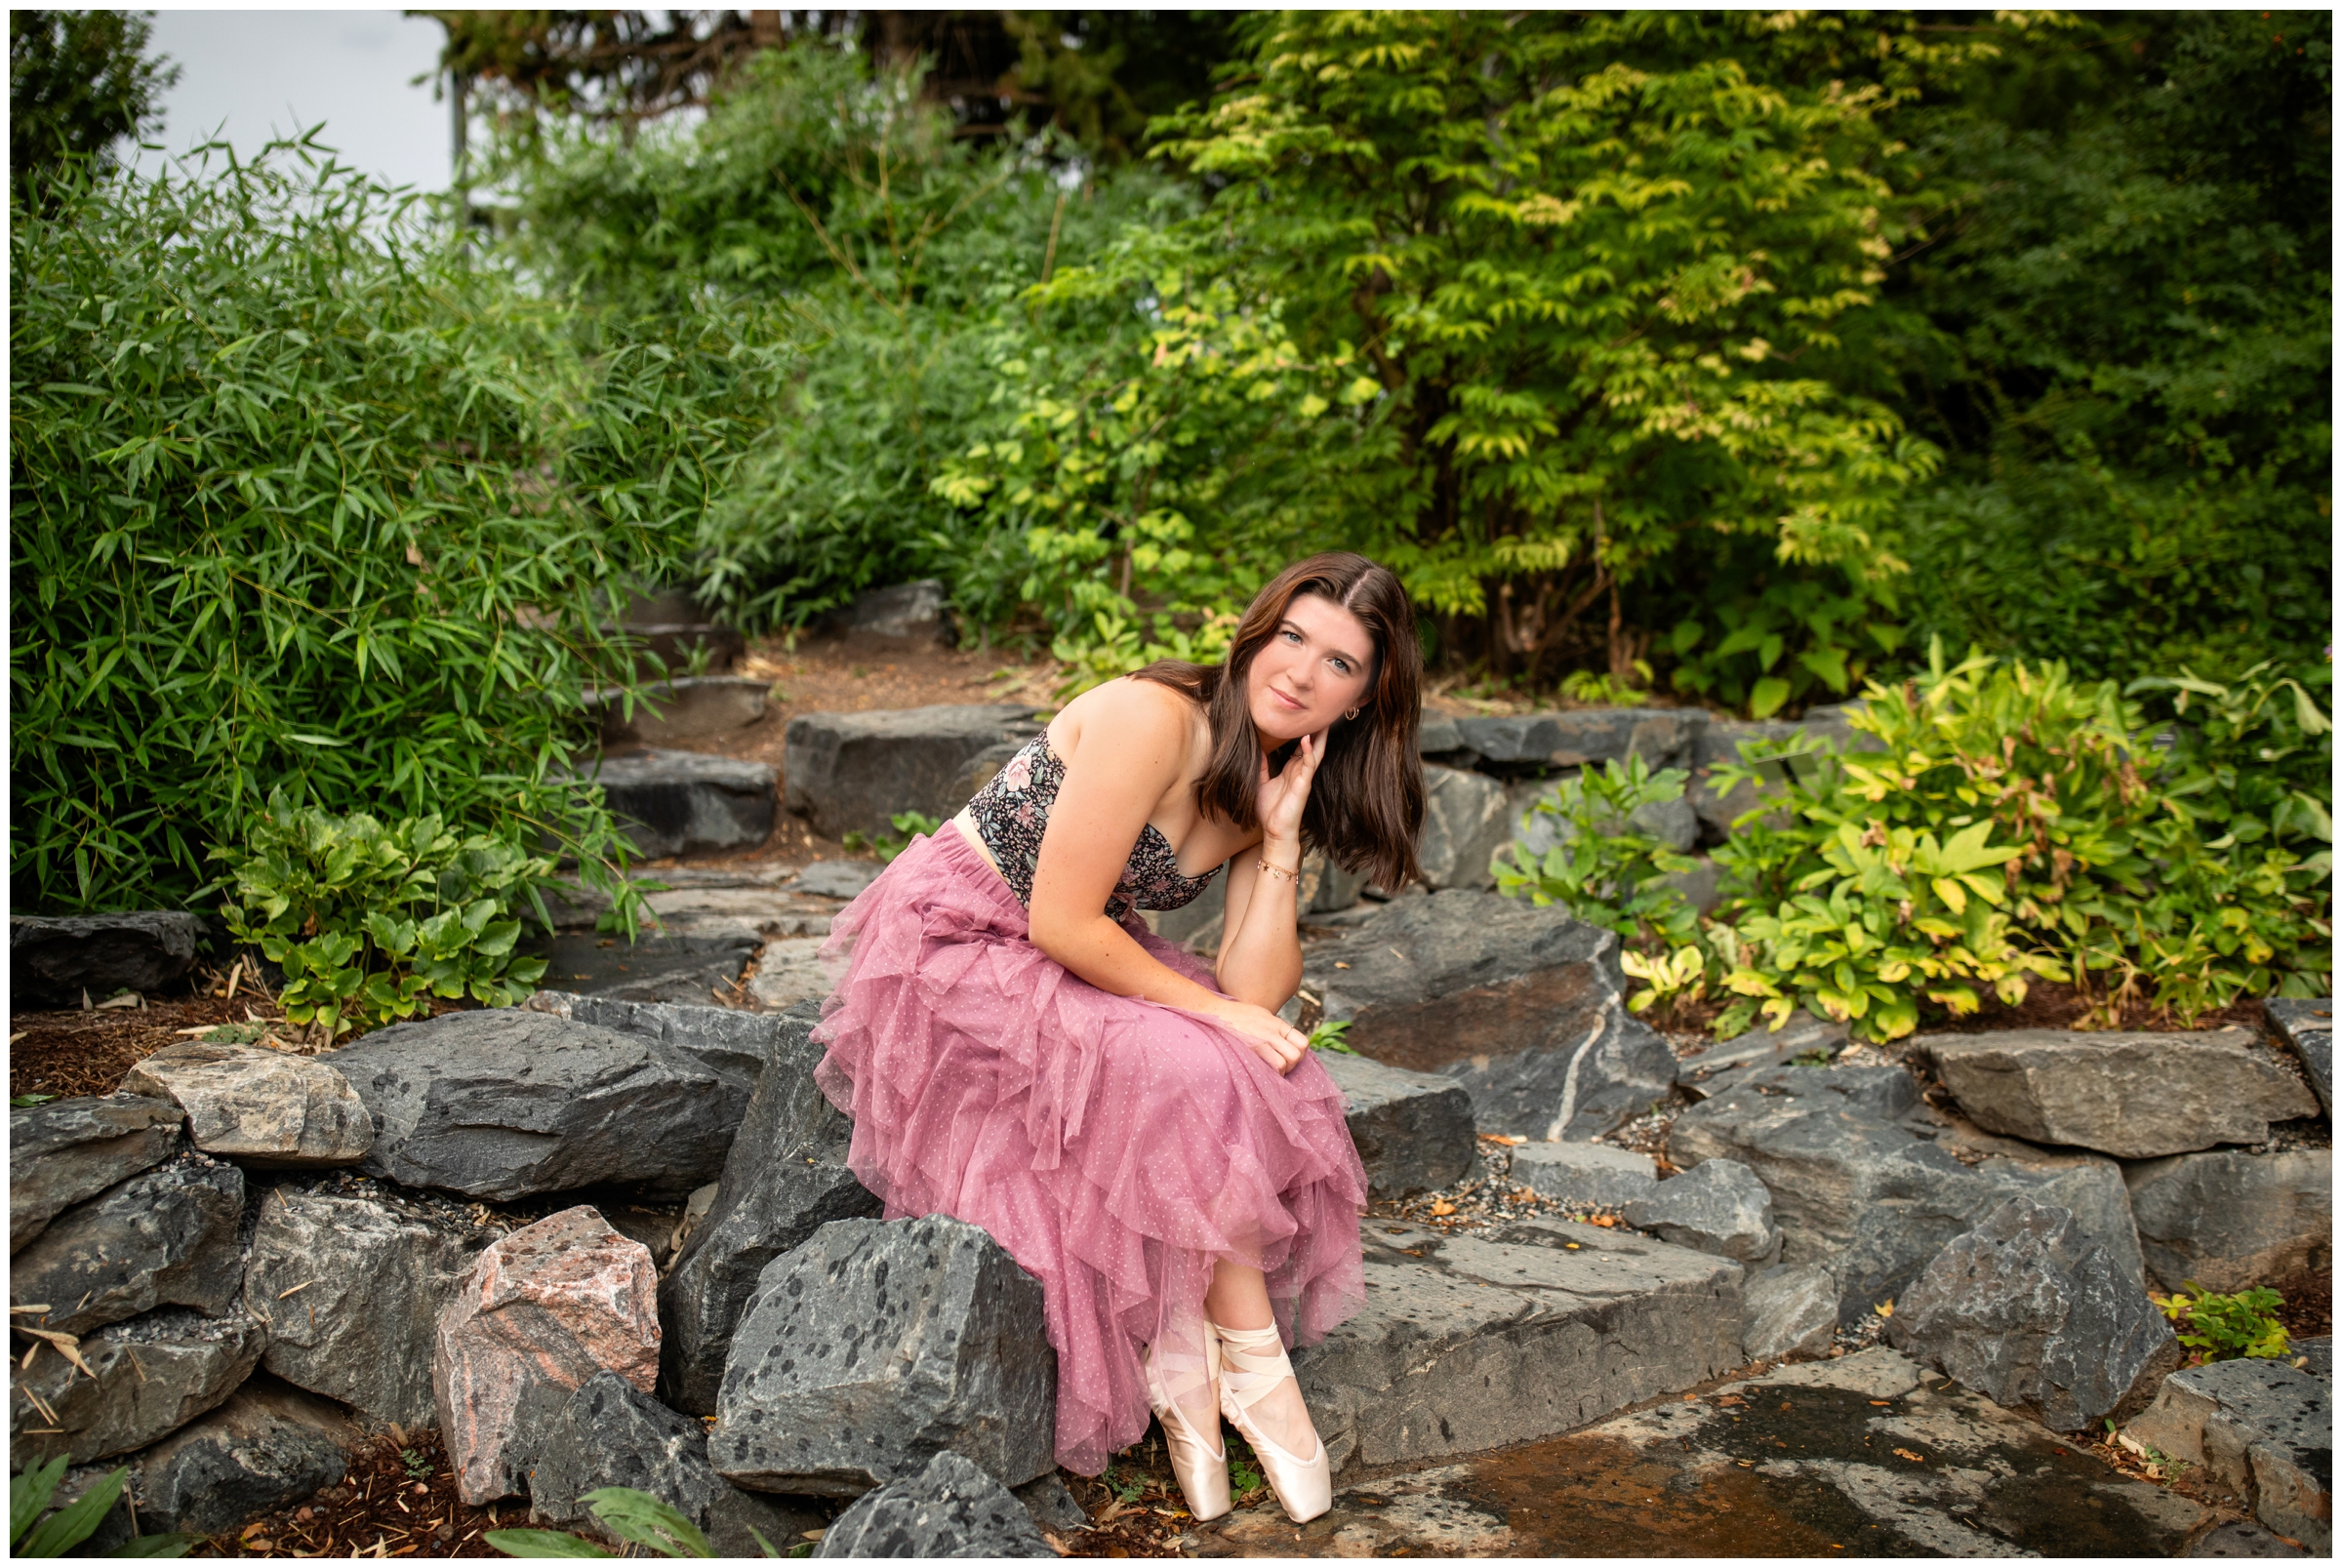 ballet senior photography inspiration at the Denver Botanic Gardens in Colorado 